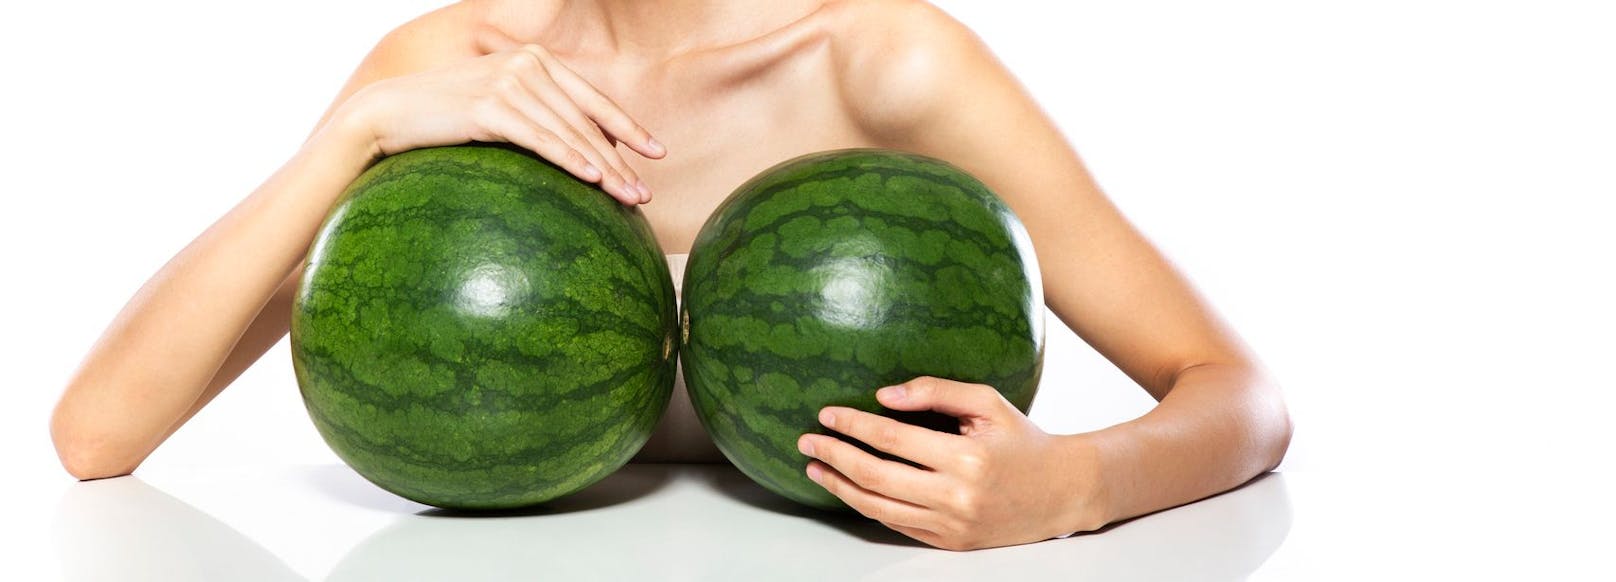 2. Auf das Gewicht achten: Hebe die Melone hoch und vergleiche das Gewicht mit einer anderen Melone, die eine ähnliche Größe hat. Je schwerer, desto reifer und besser schmeckt die Frucht.